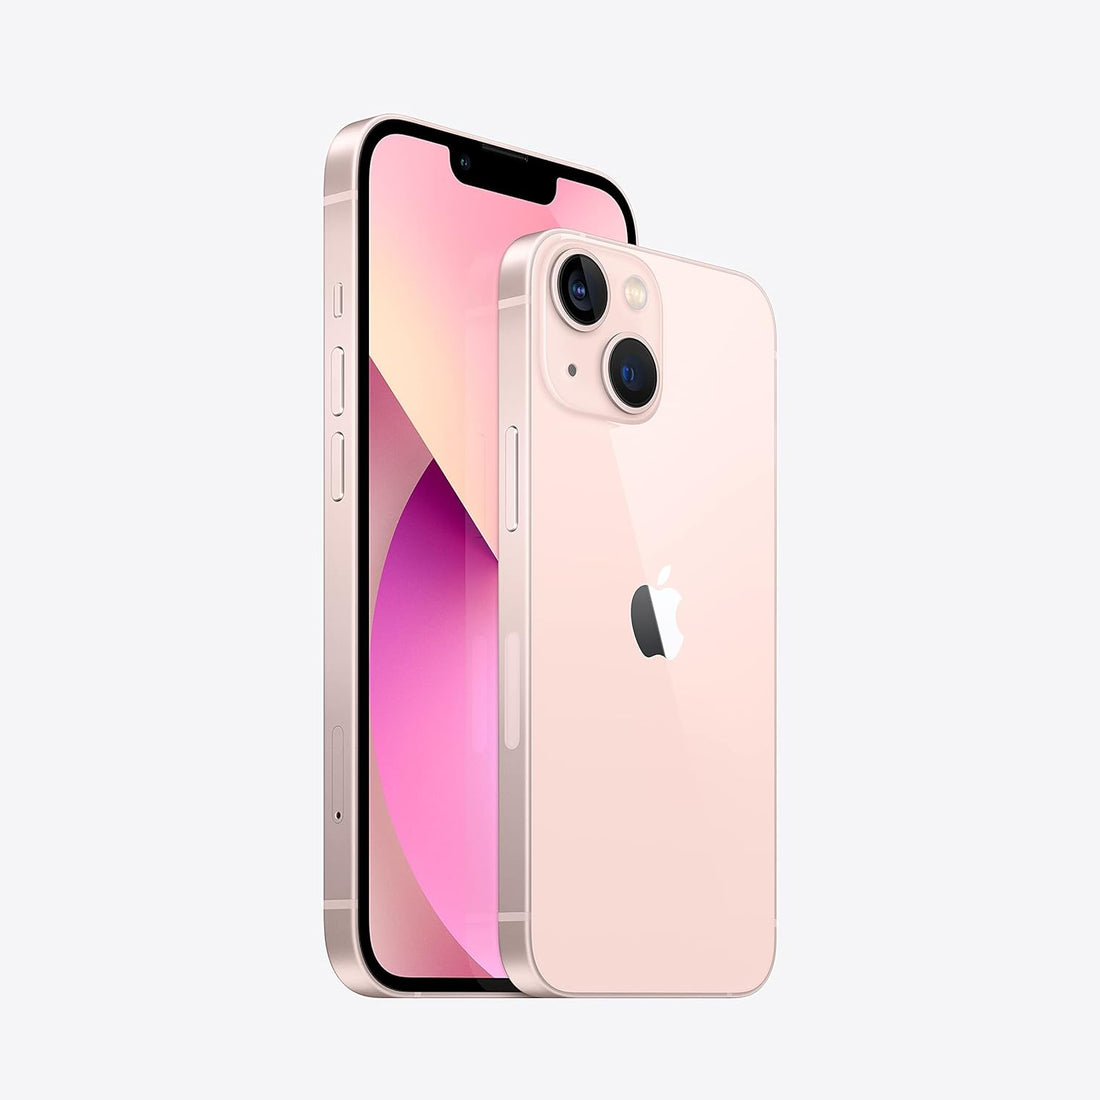 Apple iPhone 13 - 512GB (Unlocked) - Pink (Used)